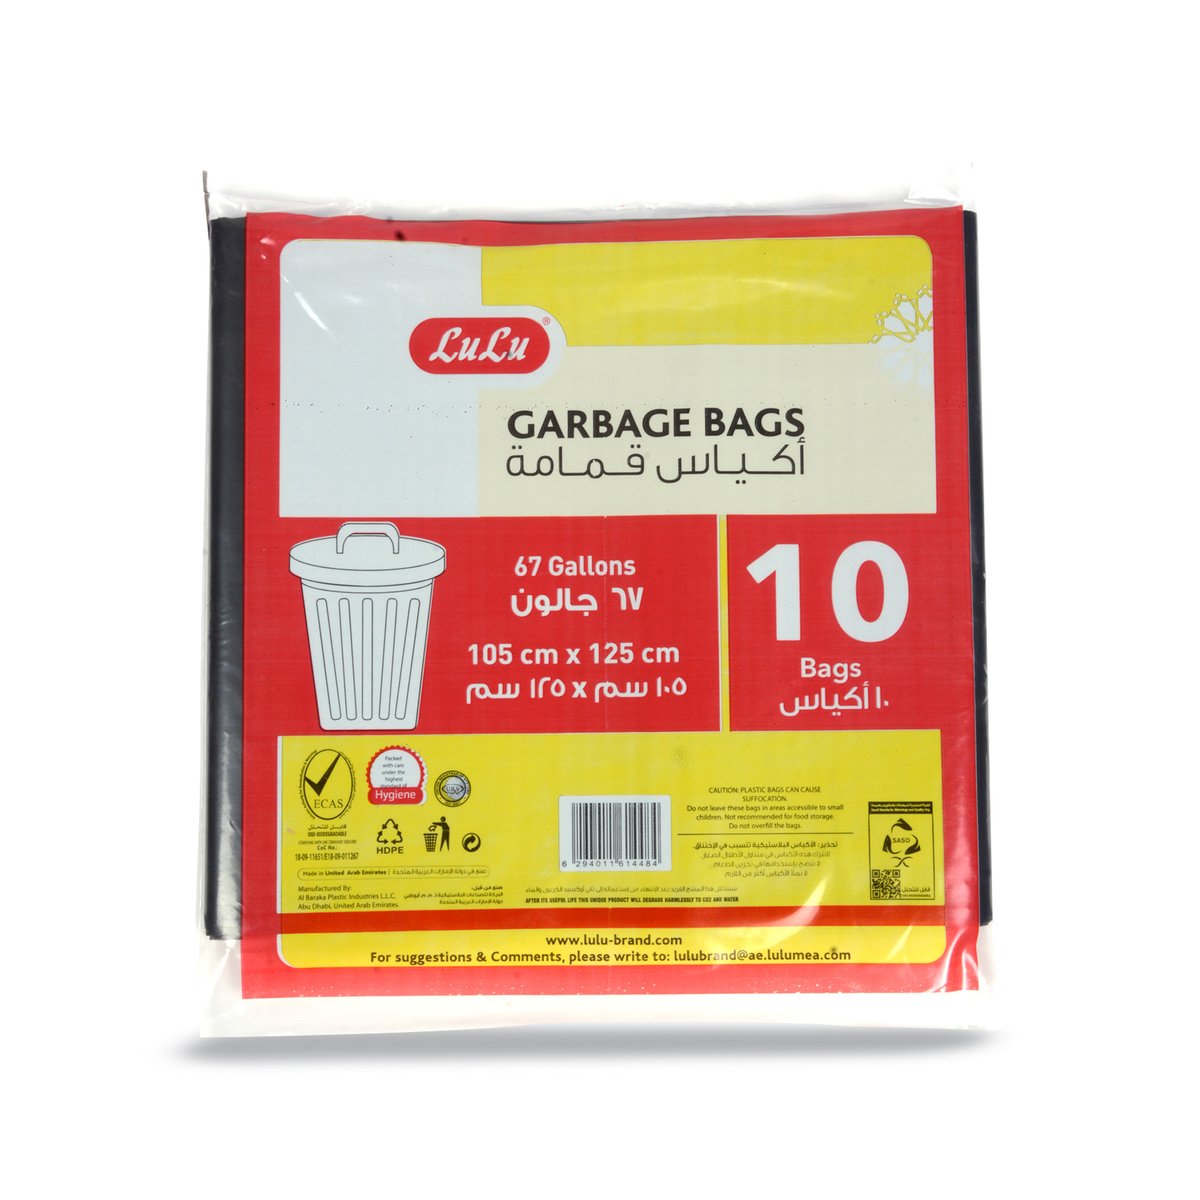 LuLu Garbage Bags 67Gallon Size 105x125cm 10pcs